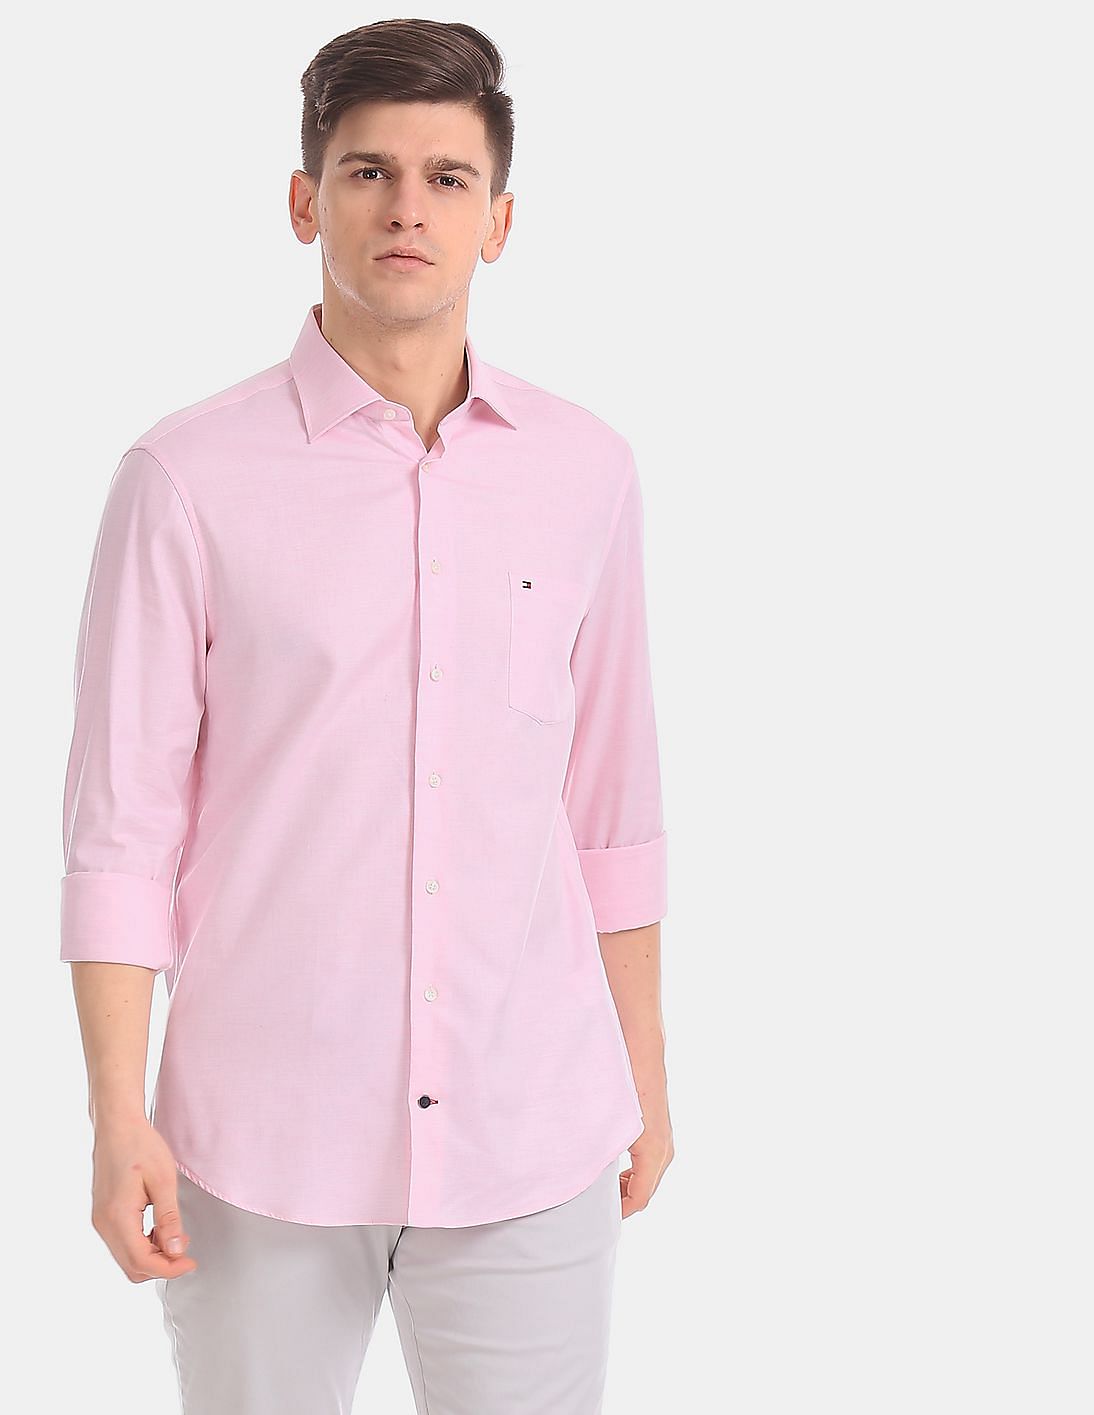 Buy Tommy Hilfiger Men Men Pink Regular Fit Patterned Weave Casual ...